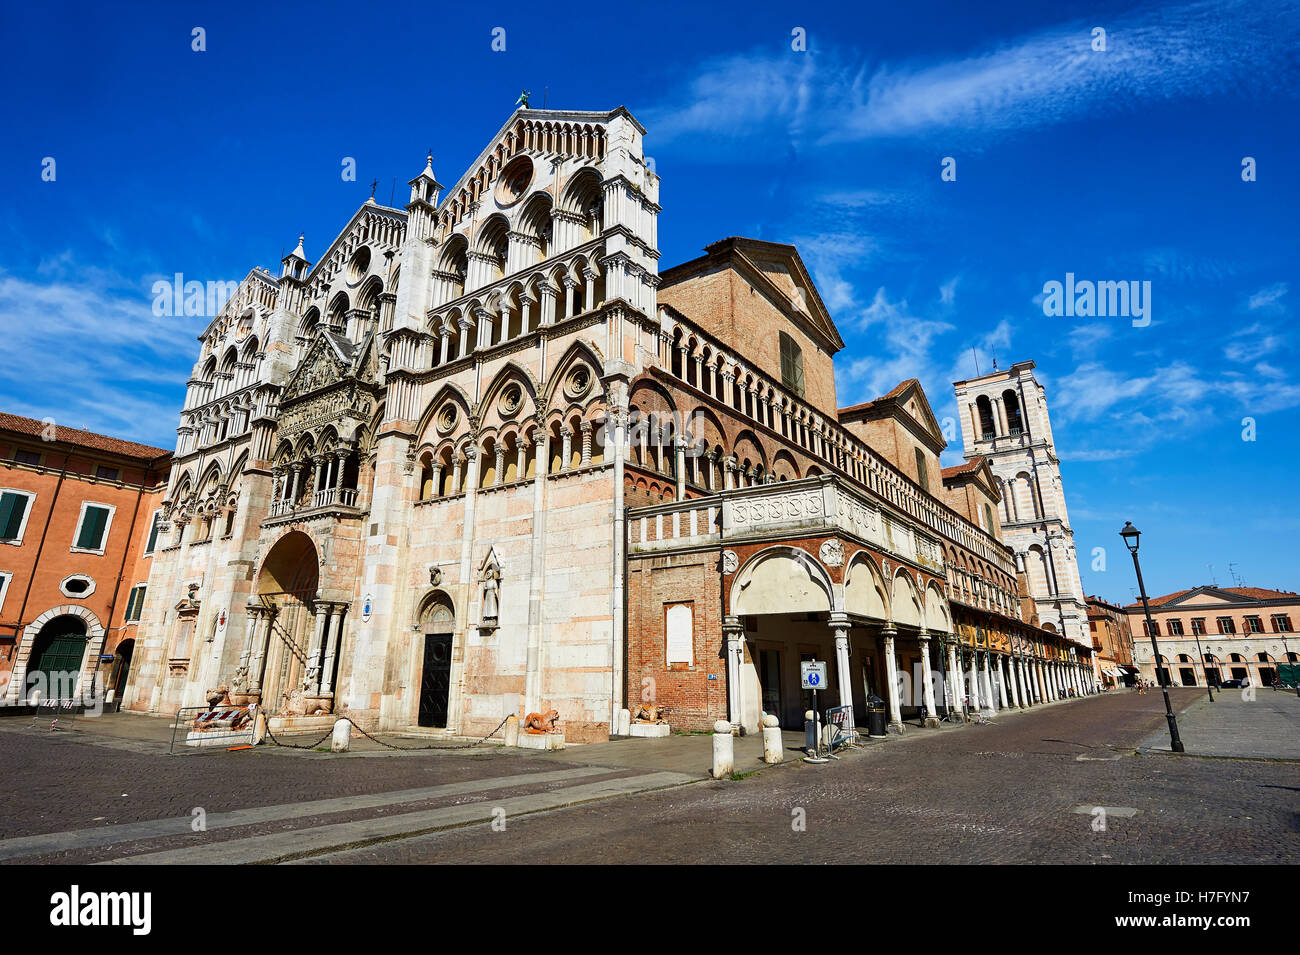 Façade de la cathédrale romane du xiie siècle Ferrara, Italie Banque D'Images